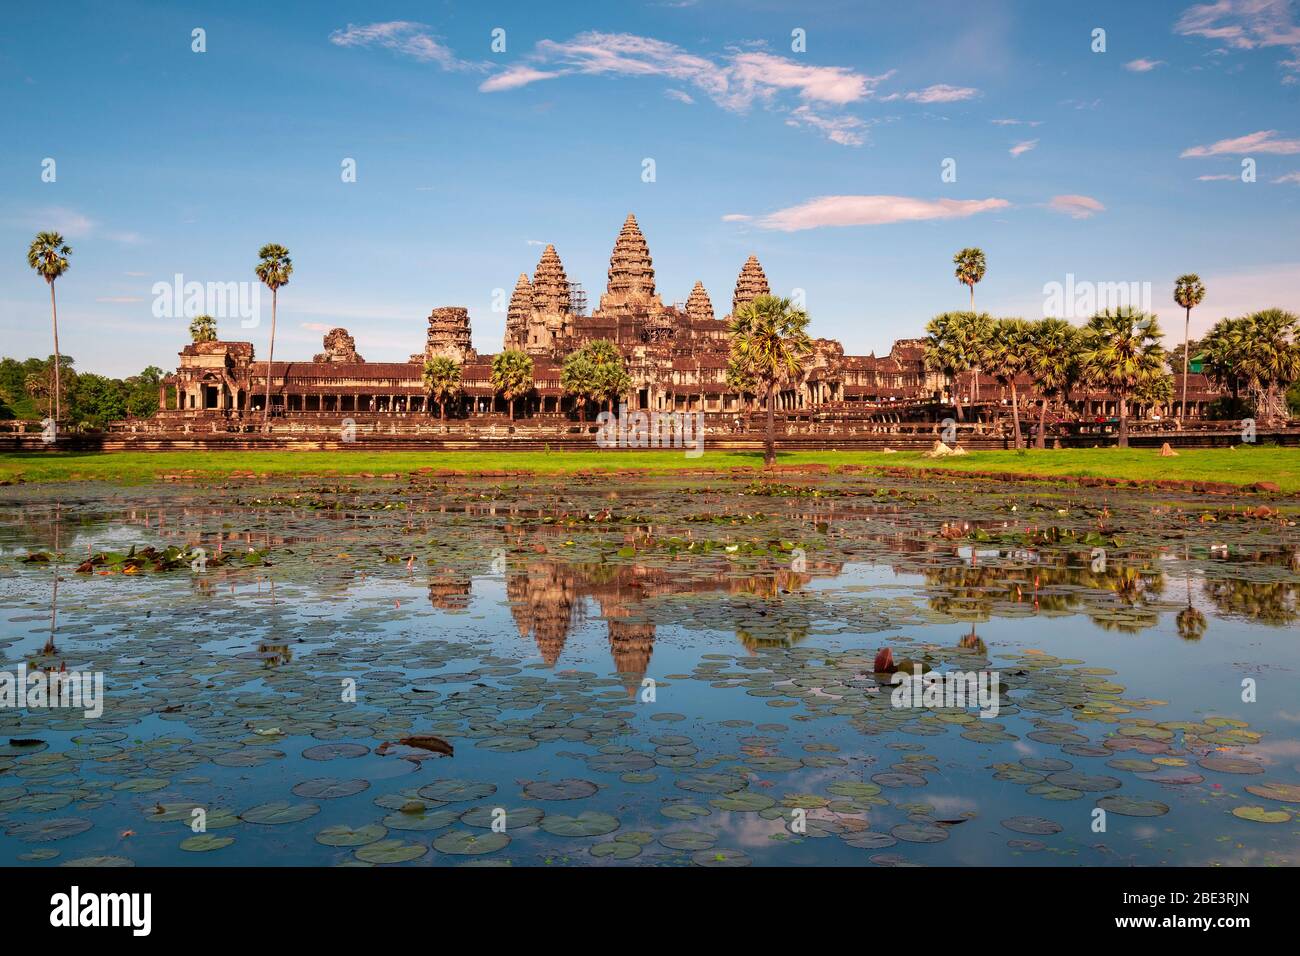 Die khmer Tempelruine von Angkor Wat bei Sonnenuntergang, Siem Reap, Kambodscha. Stockfoto